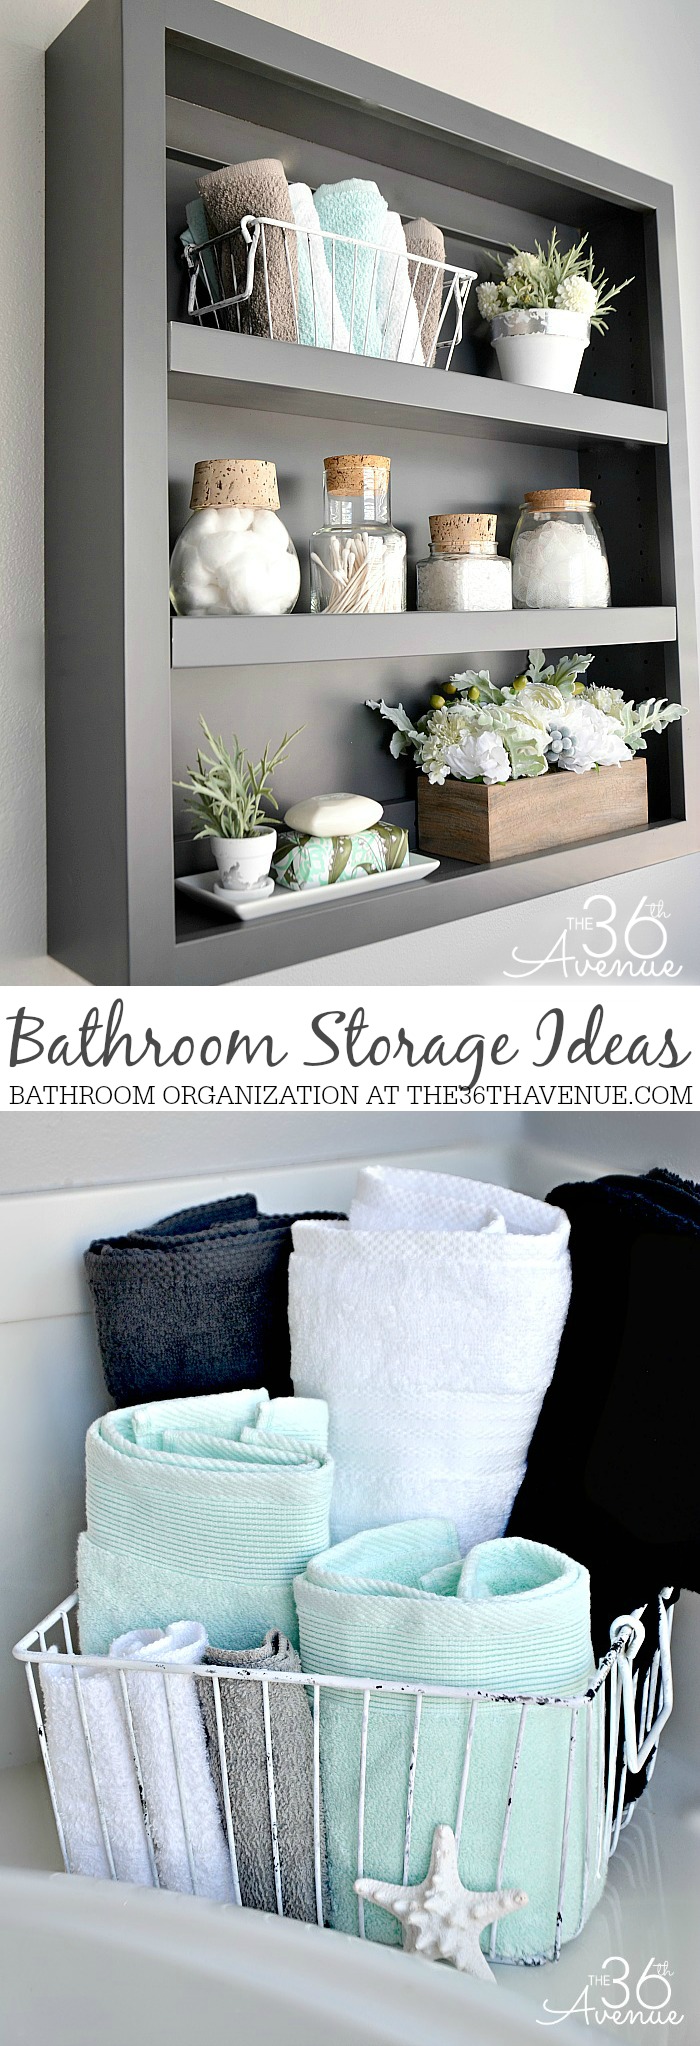 Bathroom Storage Organization Ideas